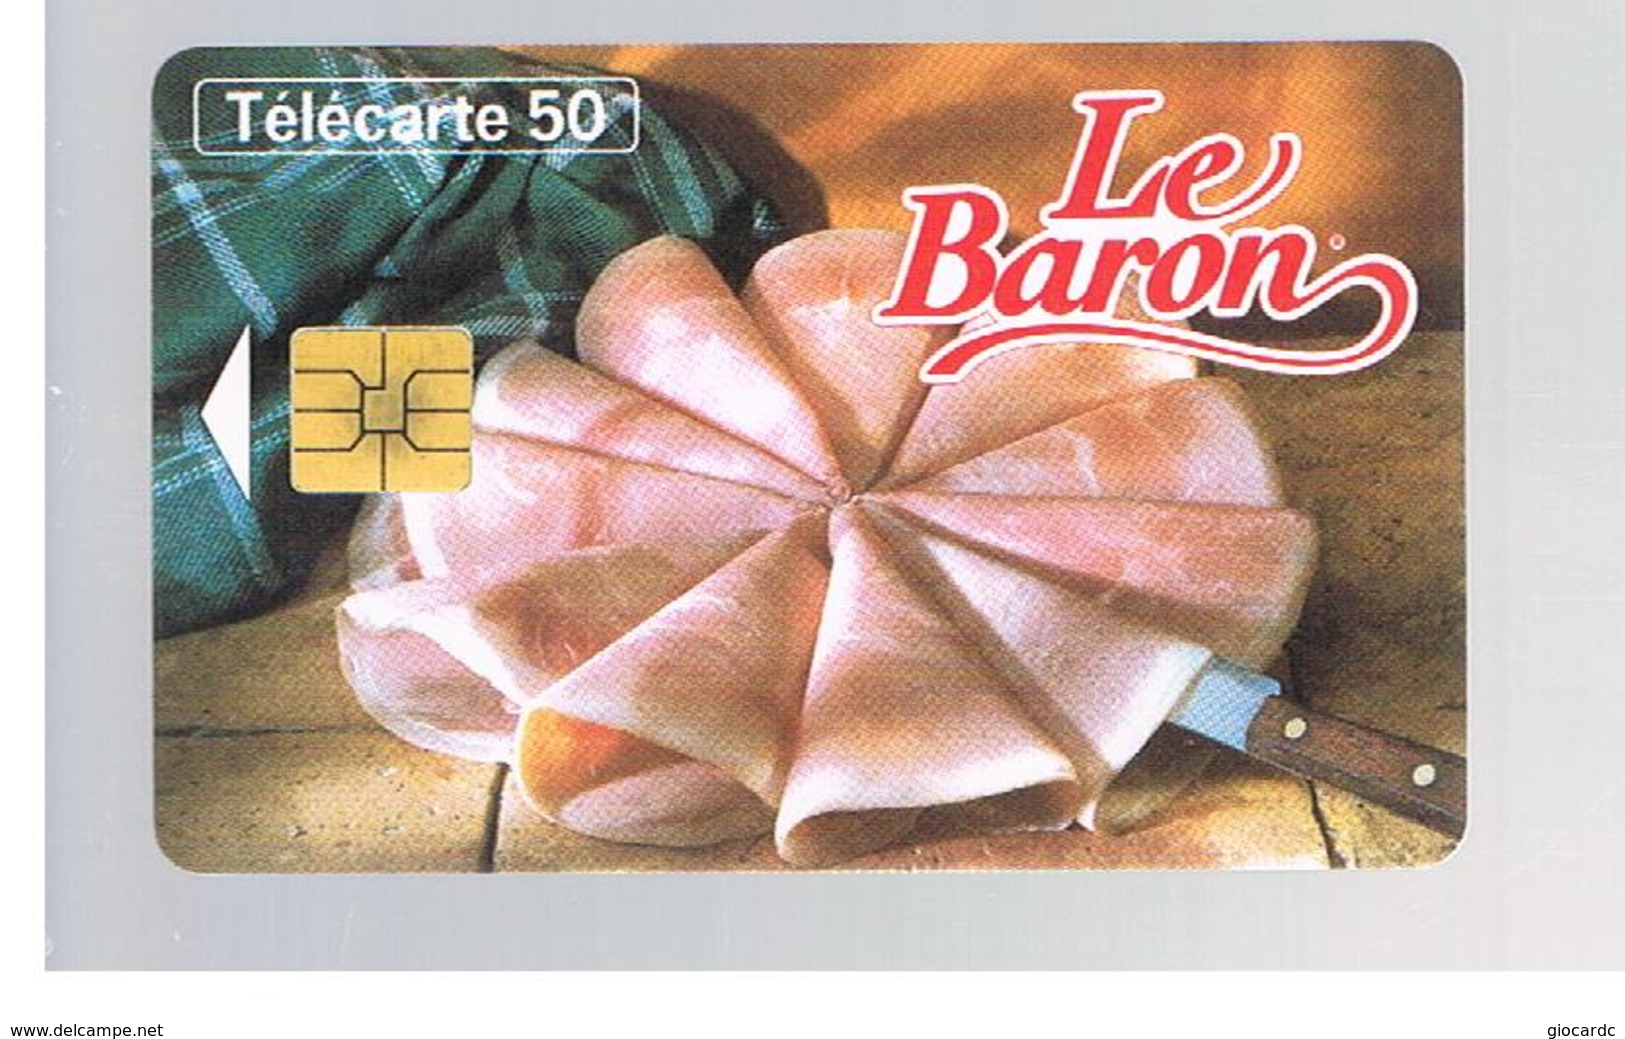 FRANCIA (FRANCE) -  1996  LE BARON, FOOD   - USED°- RIF. 10899 - Alimentation